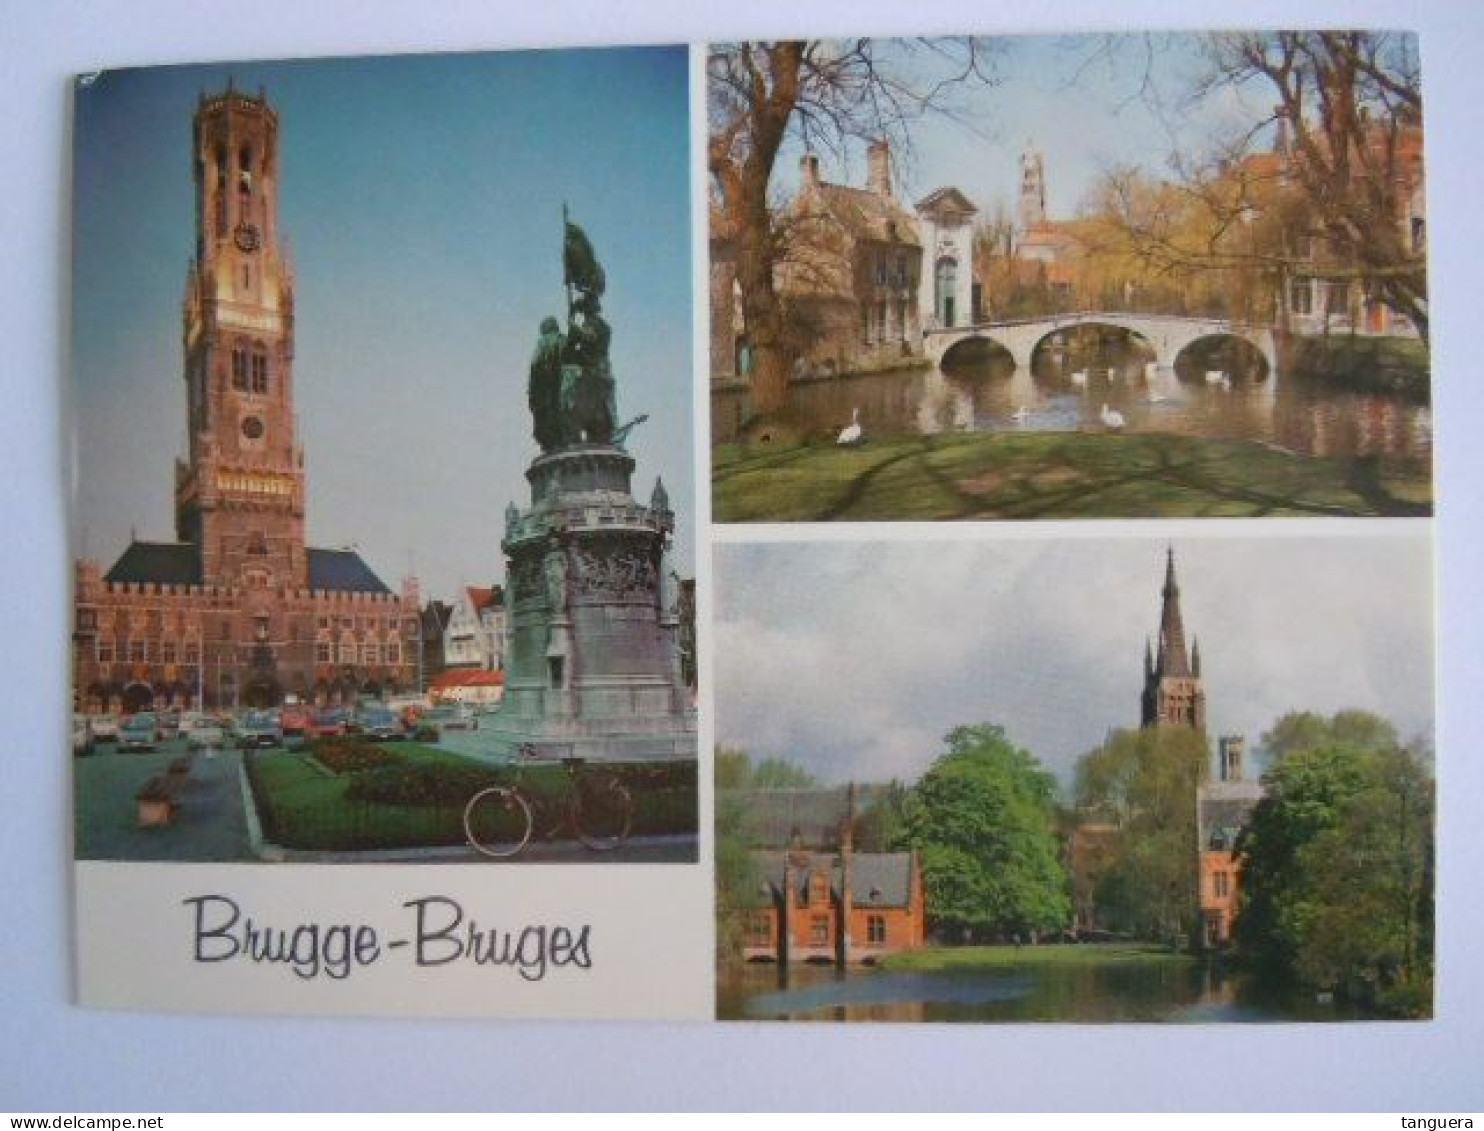 Brugge Bruges Multi-vues Multivues Edit Le Berrurier 536 (703) - Brugge